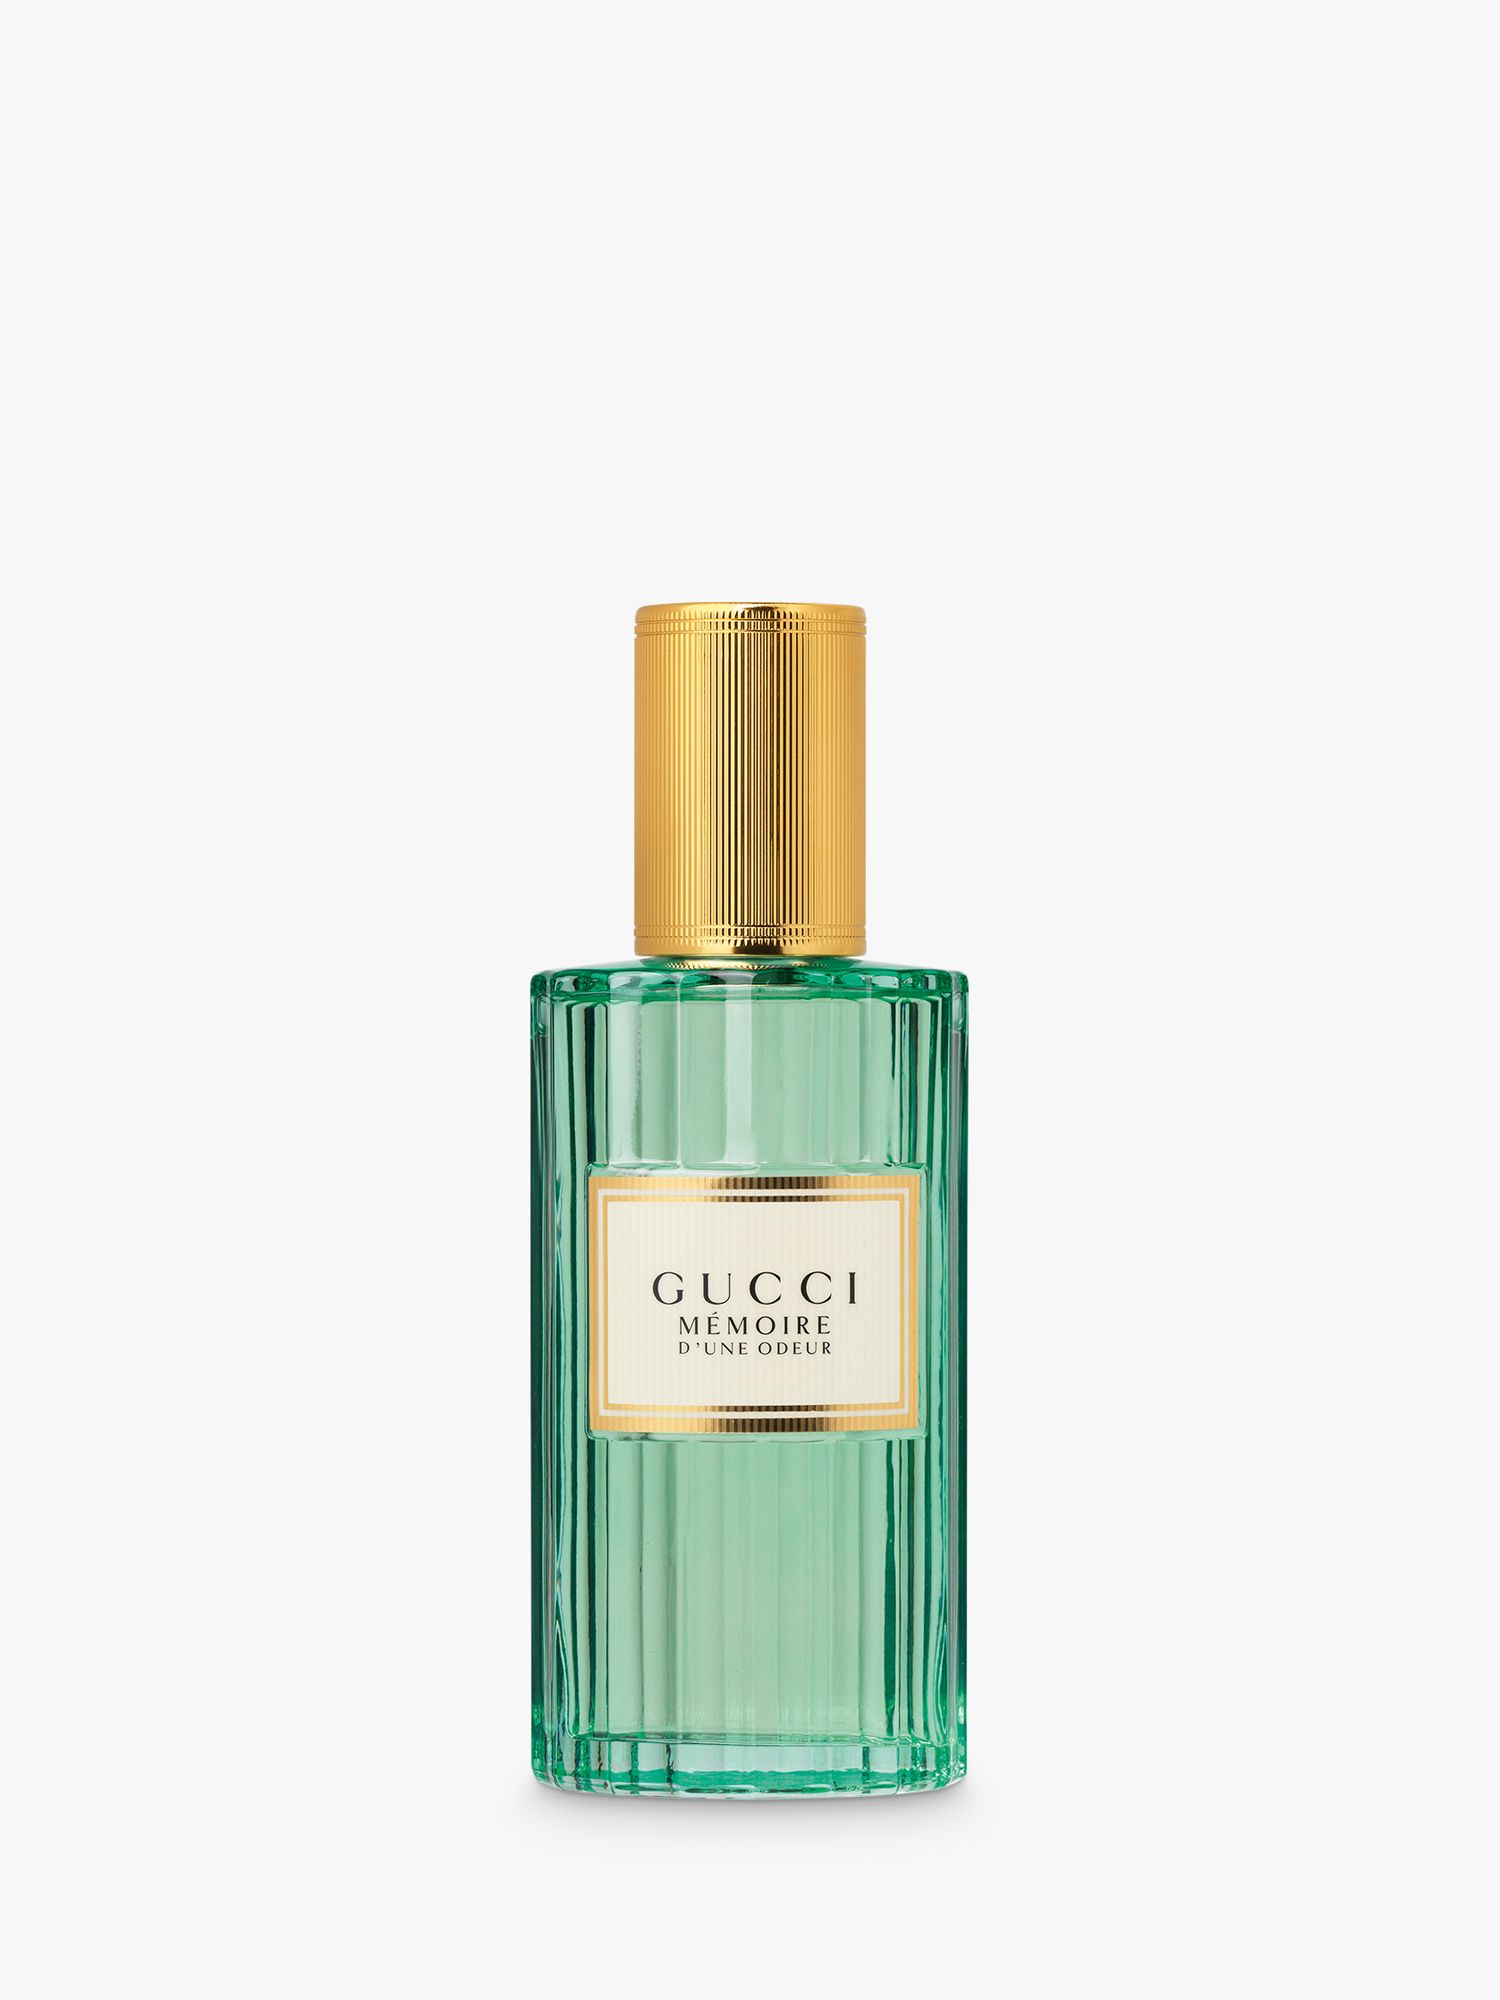 Gucci Mémoire d'une Odeur Eau de Parfum, 40ml